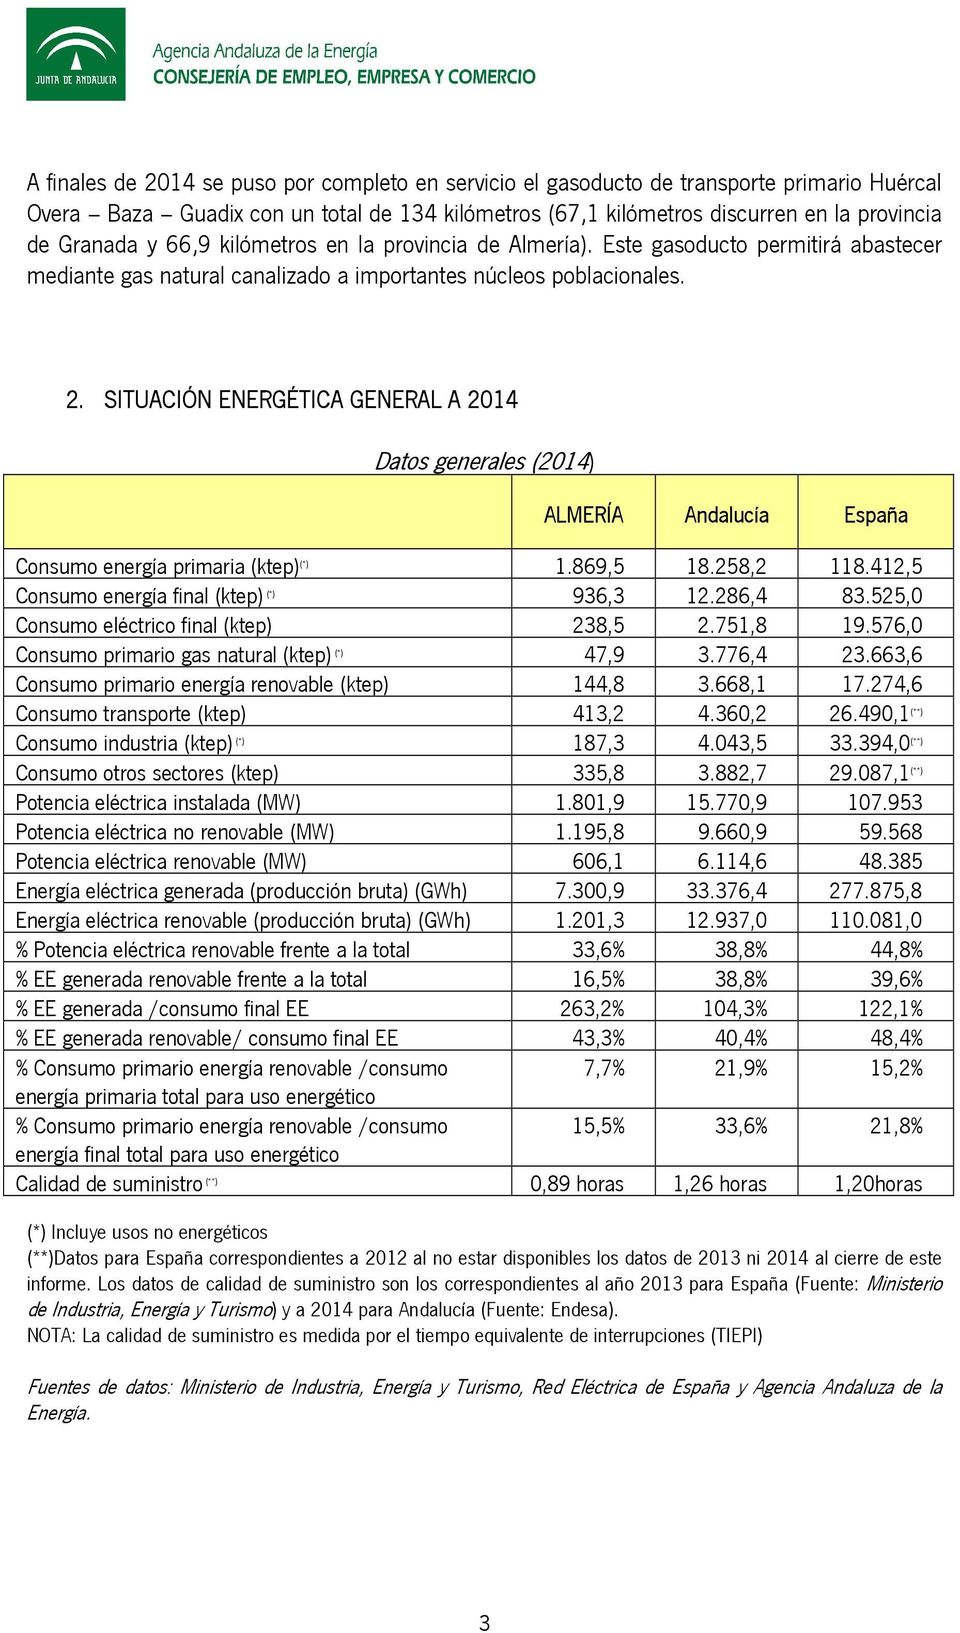 SITUACIÓN ENERGÉTICA GENERAL A 2014 Datos generales (2014) ALMERÍA Andalucía España Consumo energía primaria (ktep) (*) 1.869,5 18.258,2 118.412,5 Consumo energía final (ktep) (*) 936,3 12.286,4 83.